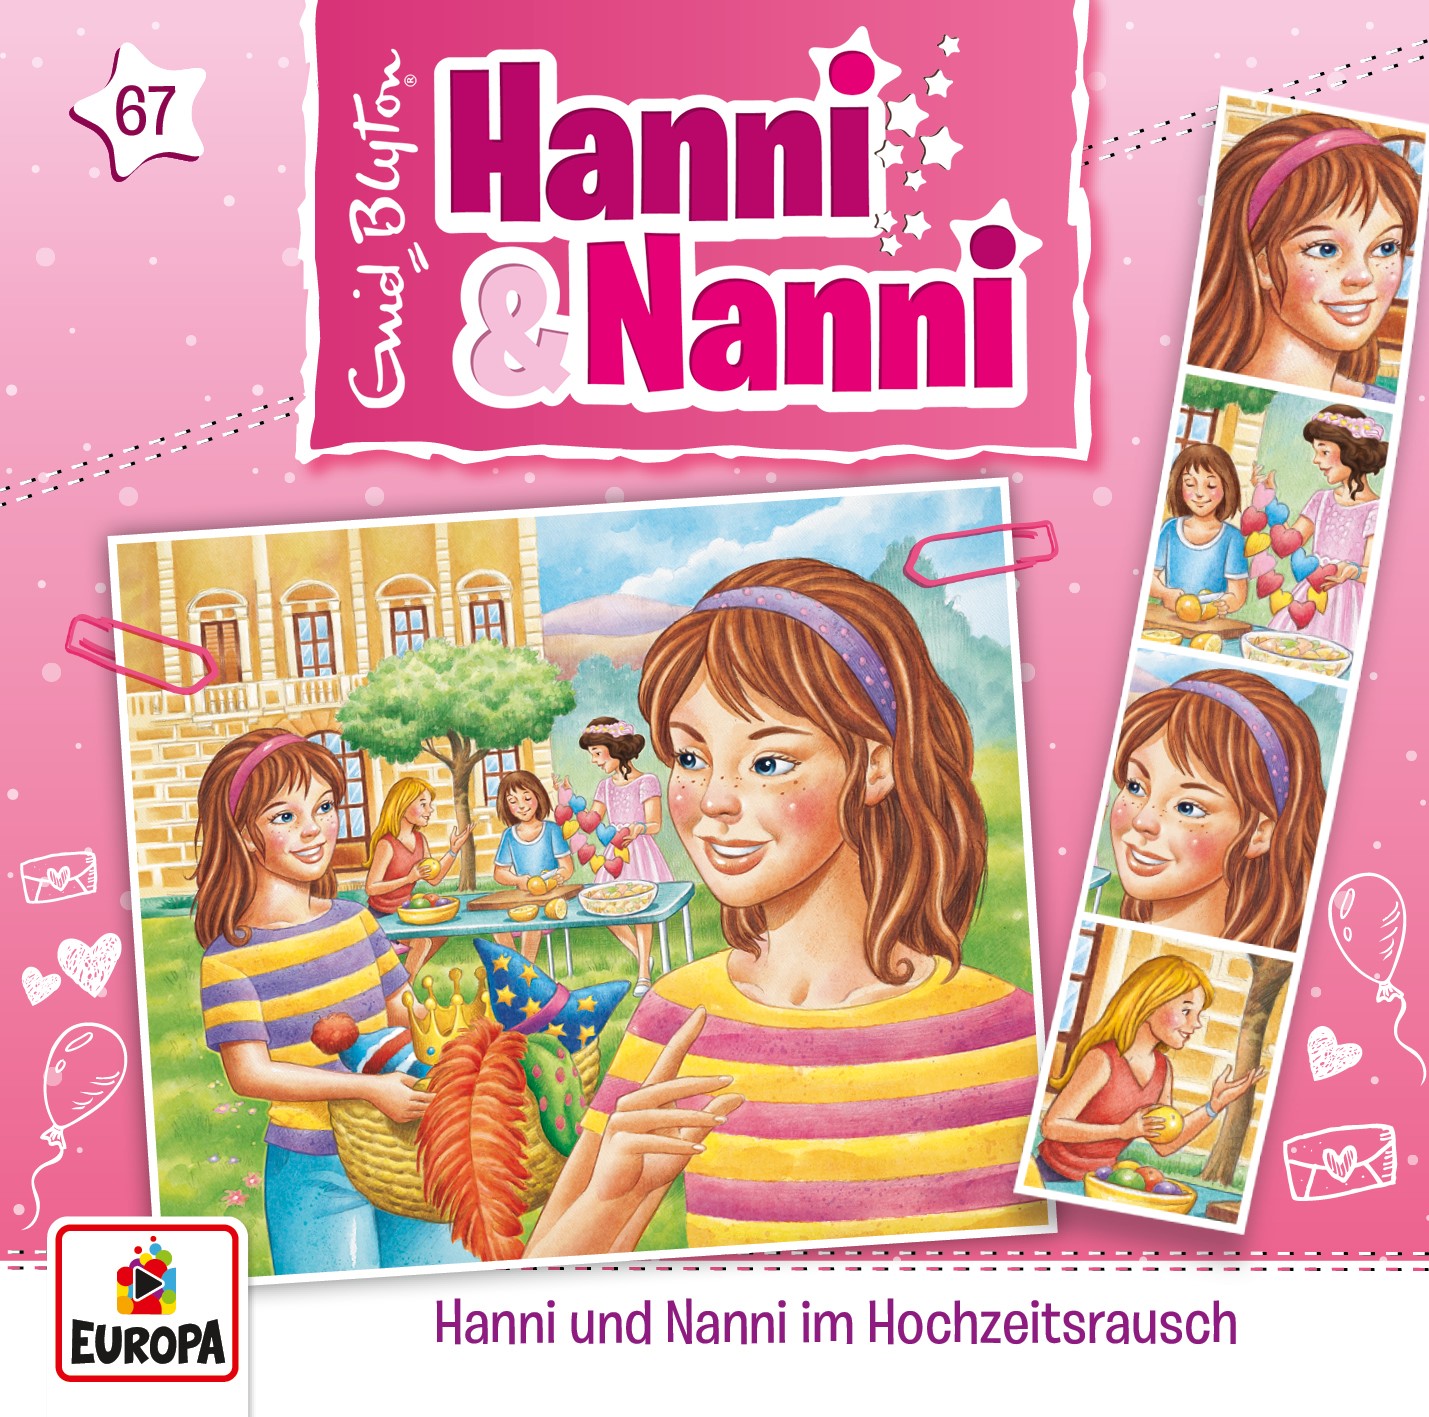 Hanni und Nanni: Hanni & Nanni im Hochzeitsrausch